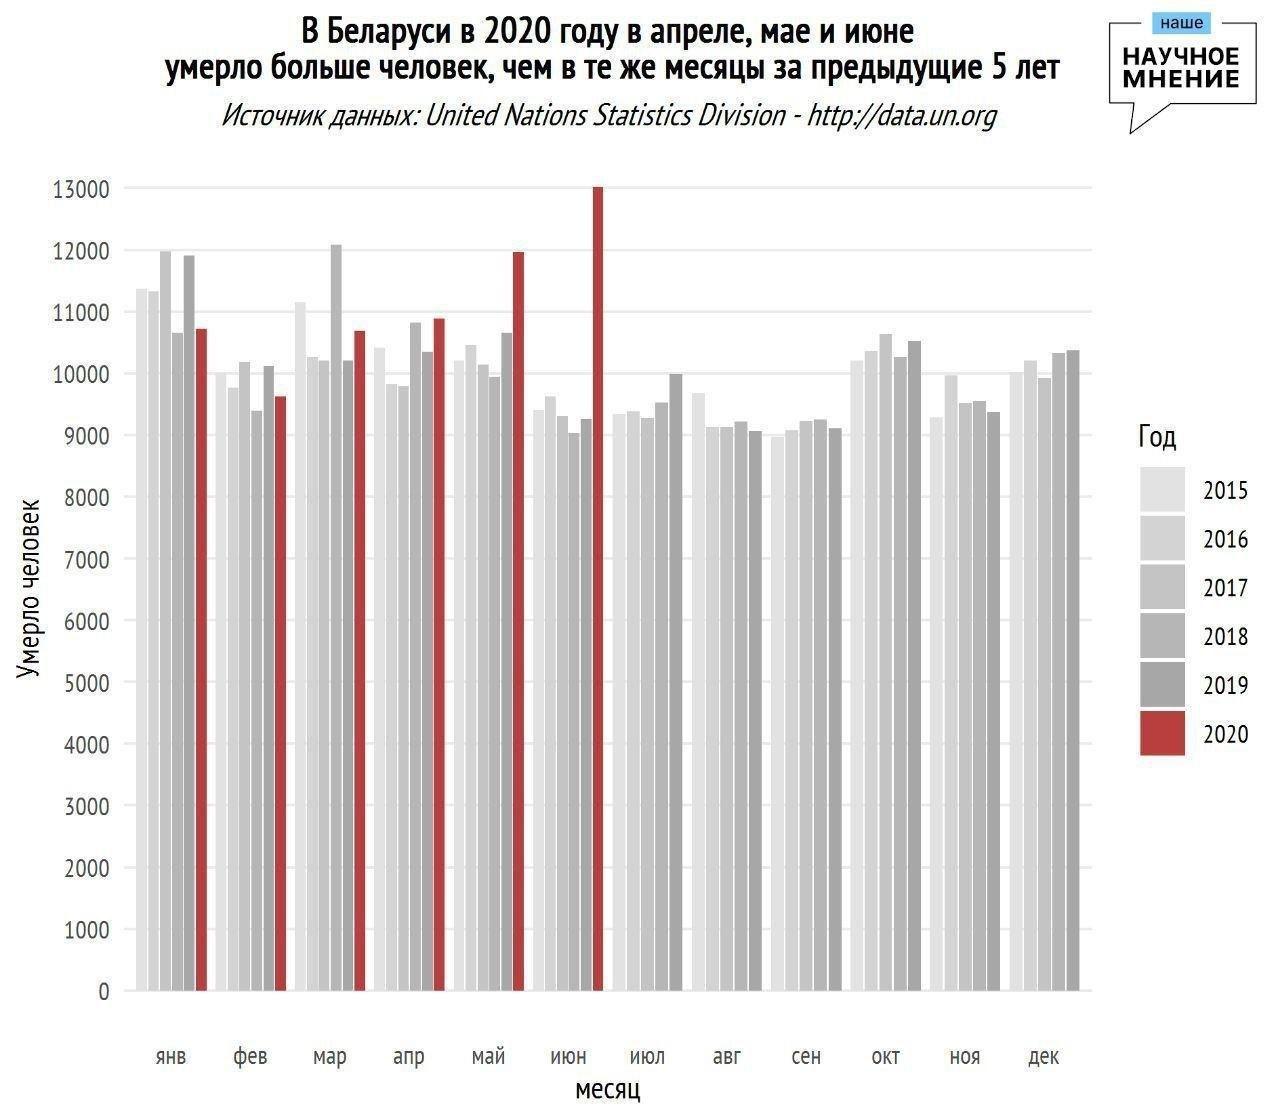 Статистику смертности в Беларуси от ООН: плюс 5605 смертей во II квартале 2020-го к 2019-му